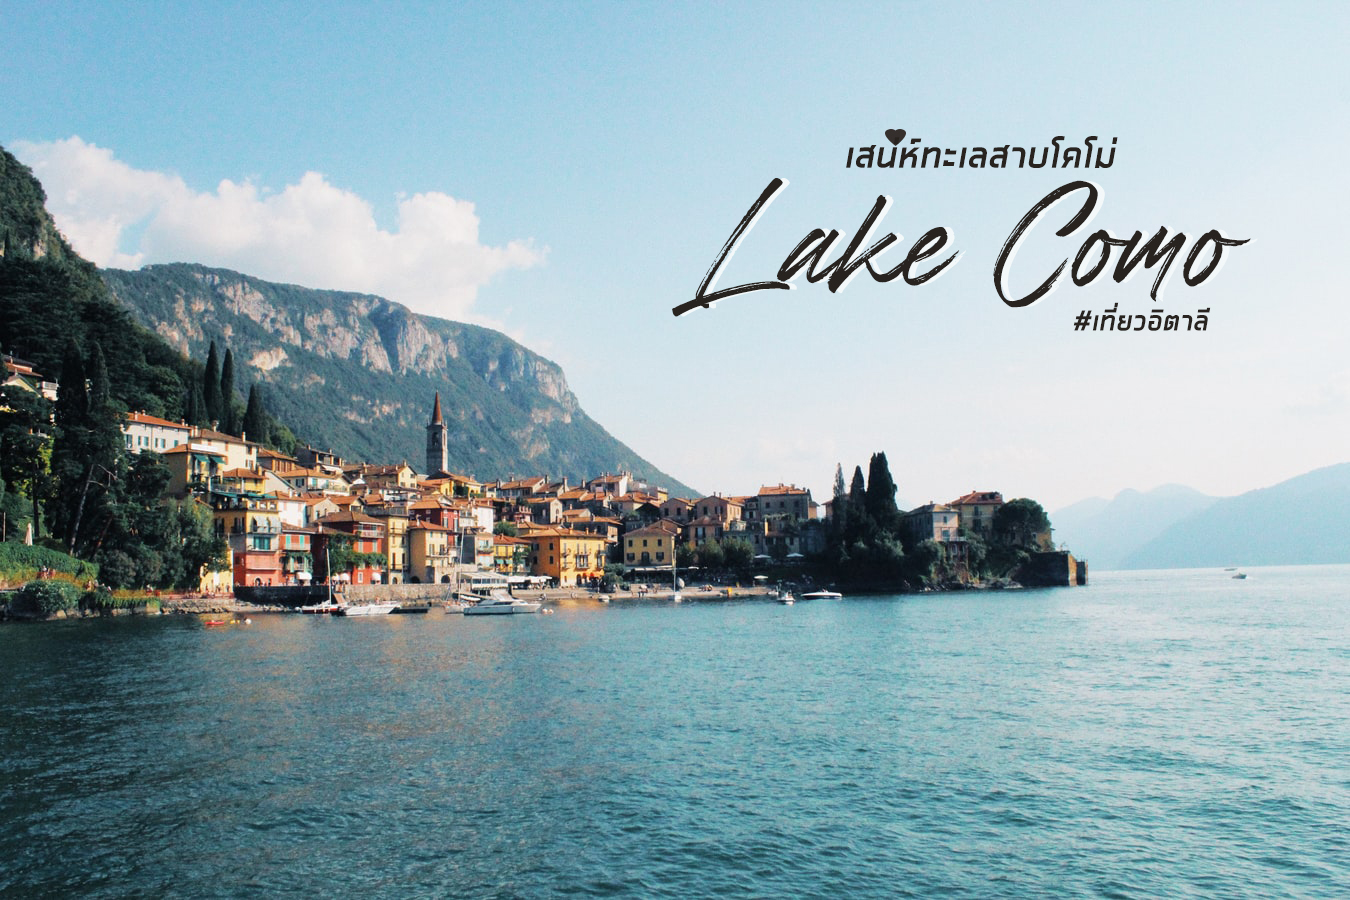 เมืองแสนสวยริมทะเลสาบโคโม่ (Lake Como) ประเทศอิตาลี